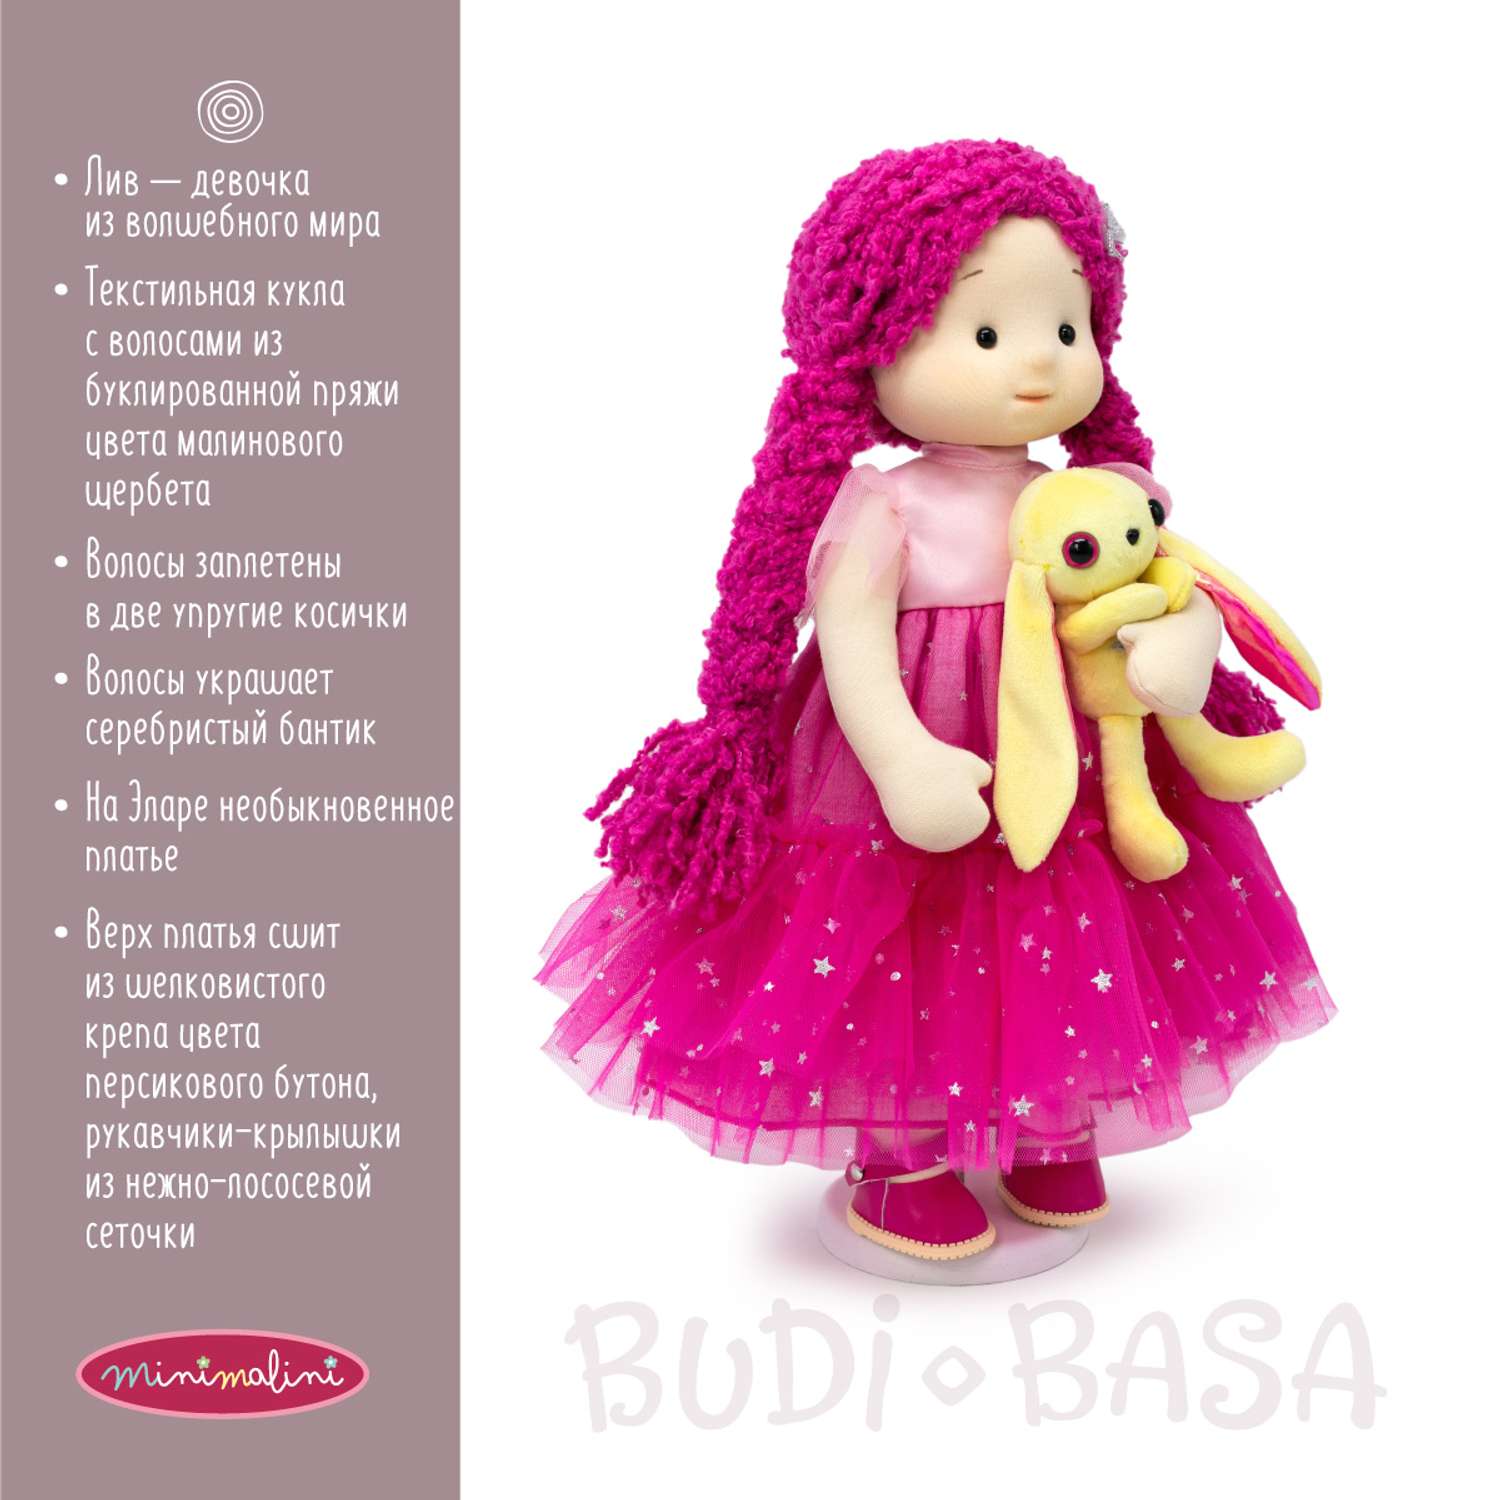 Мягкая кукла BUDI BASA Элара и зайчик Майло 38 см Mm-Elara-02 Mm-Elara-02 - фото 3